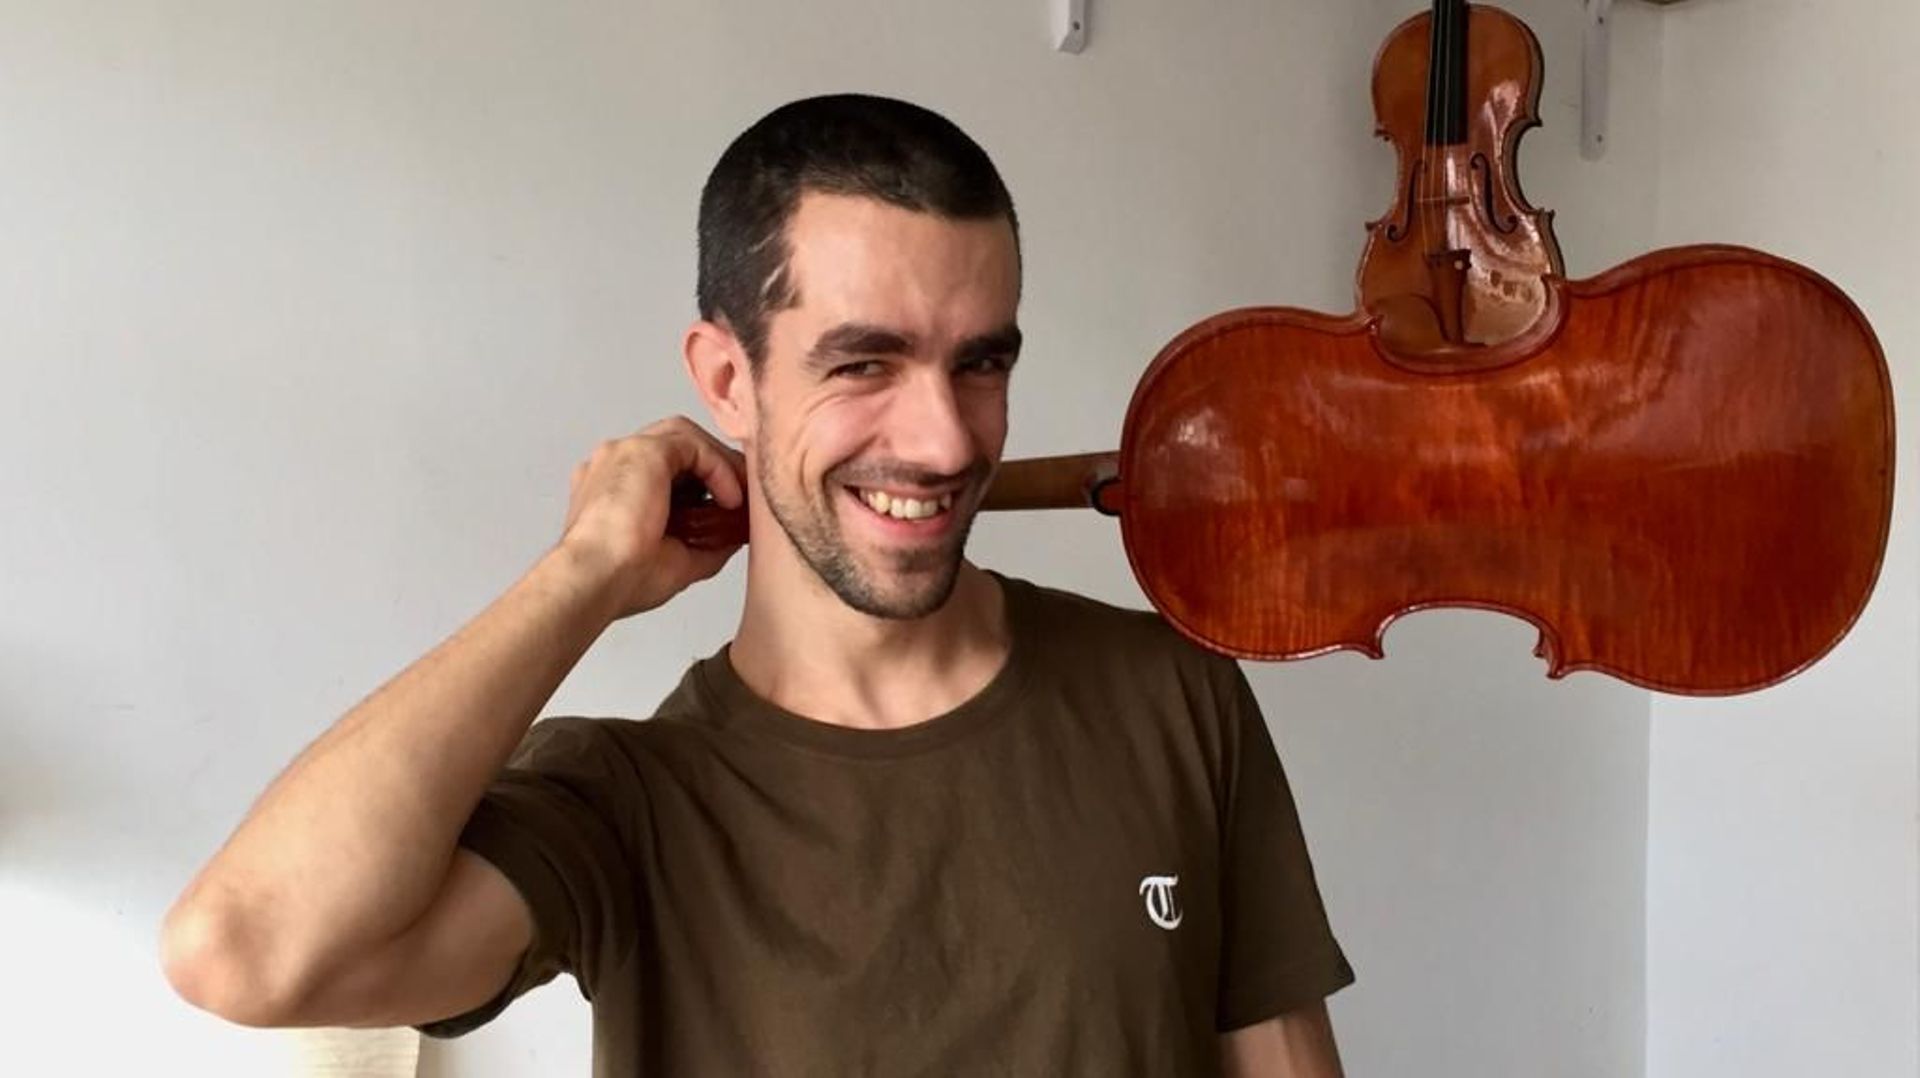 En 2e partie d'émission, honneur au jeune luthier belge Emilio Crabbé. Il vient de remporter  la médaille d'argent, en catégorie "violon alto" lors de la 16e triennale internationale de lutherie Antonio Stradivarius, à Crémone.